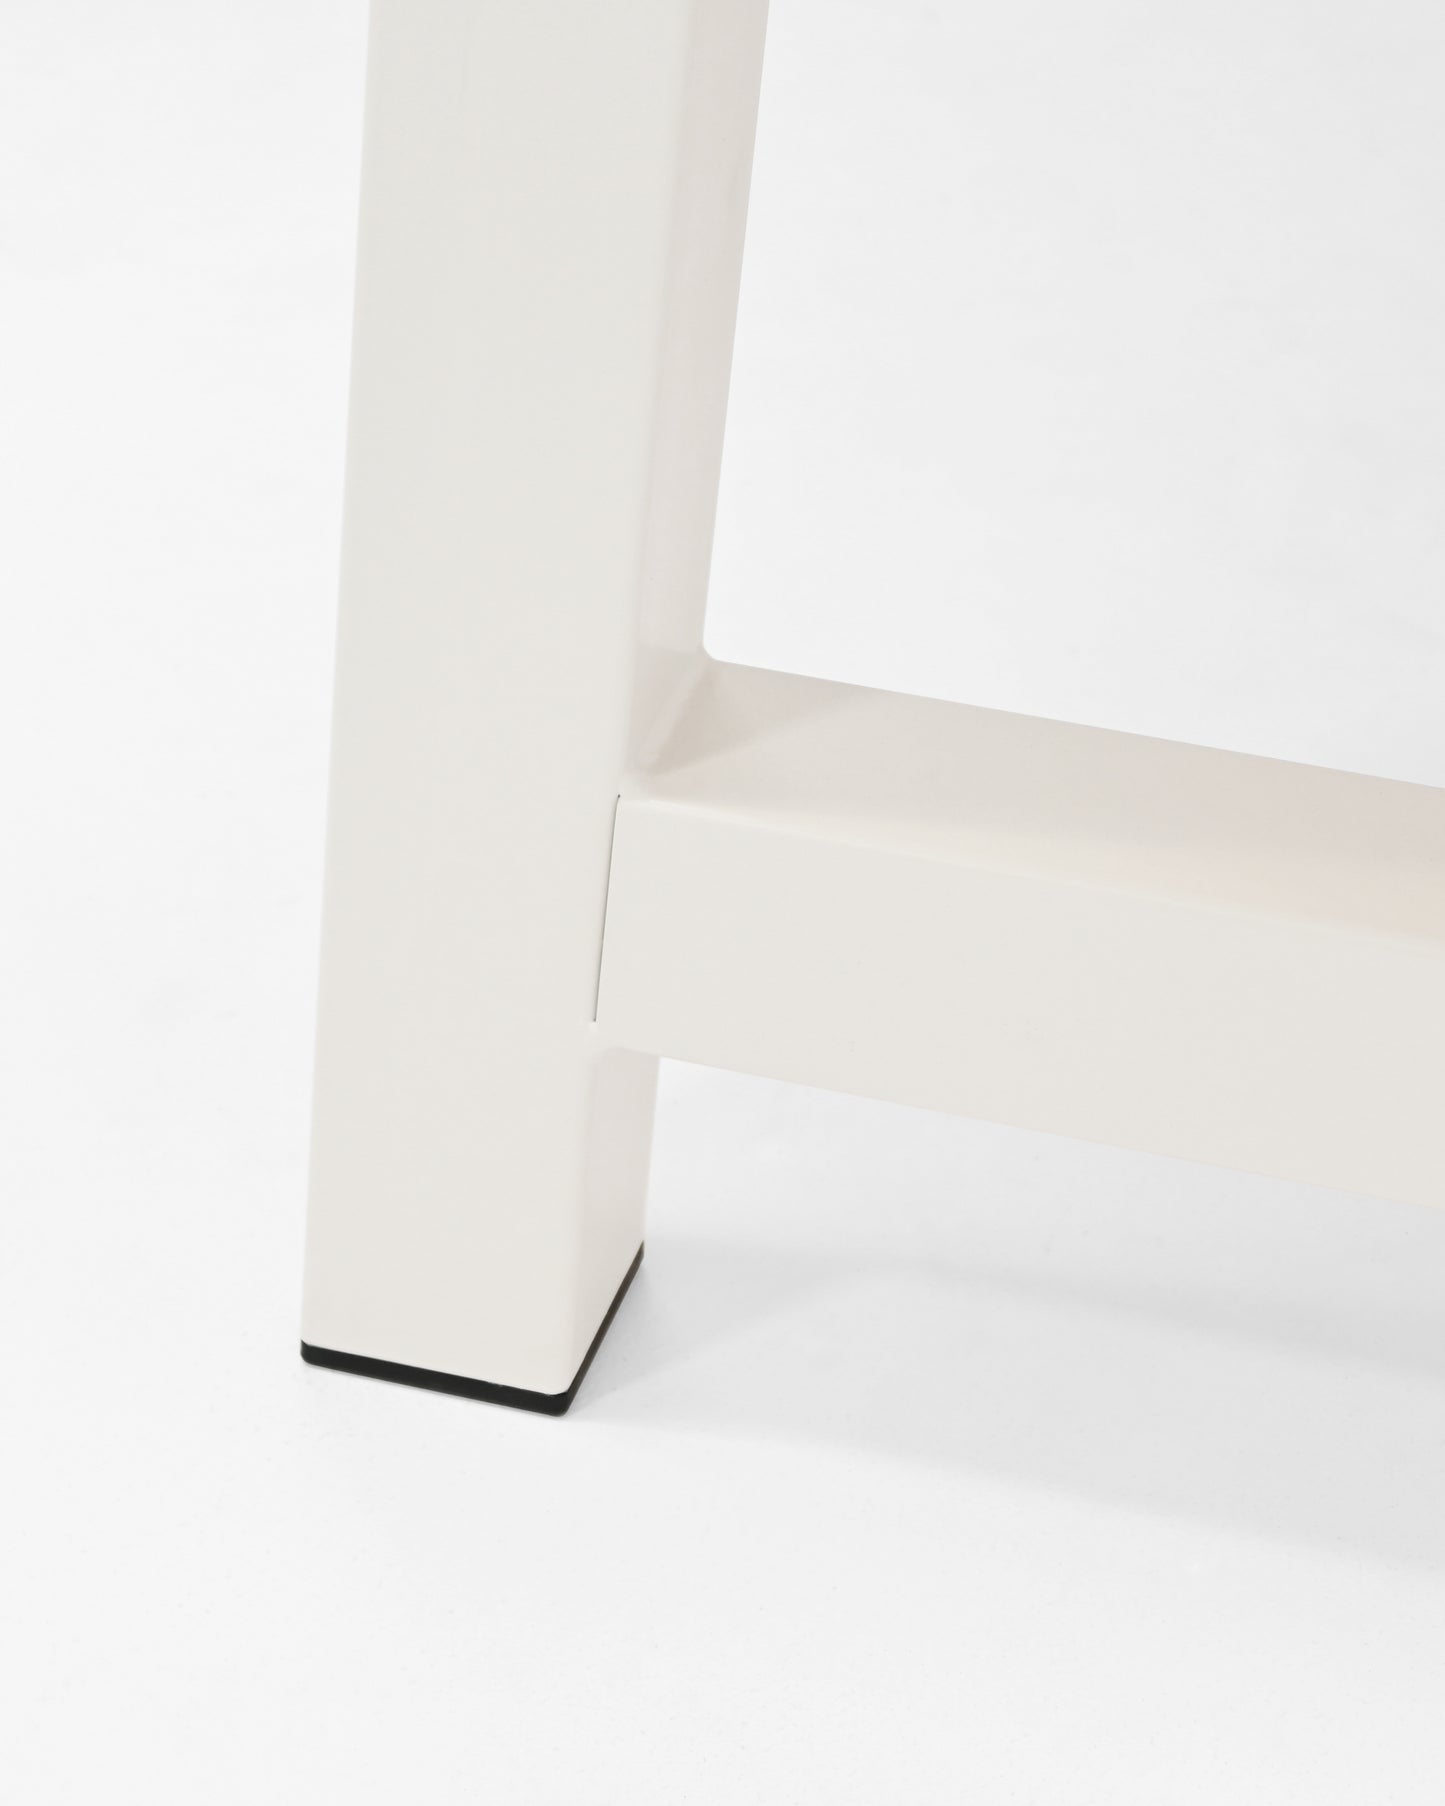 Mesa de comedor de madera maciza roble oscuro patas blancas 200x80cm - DECOWOOD